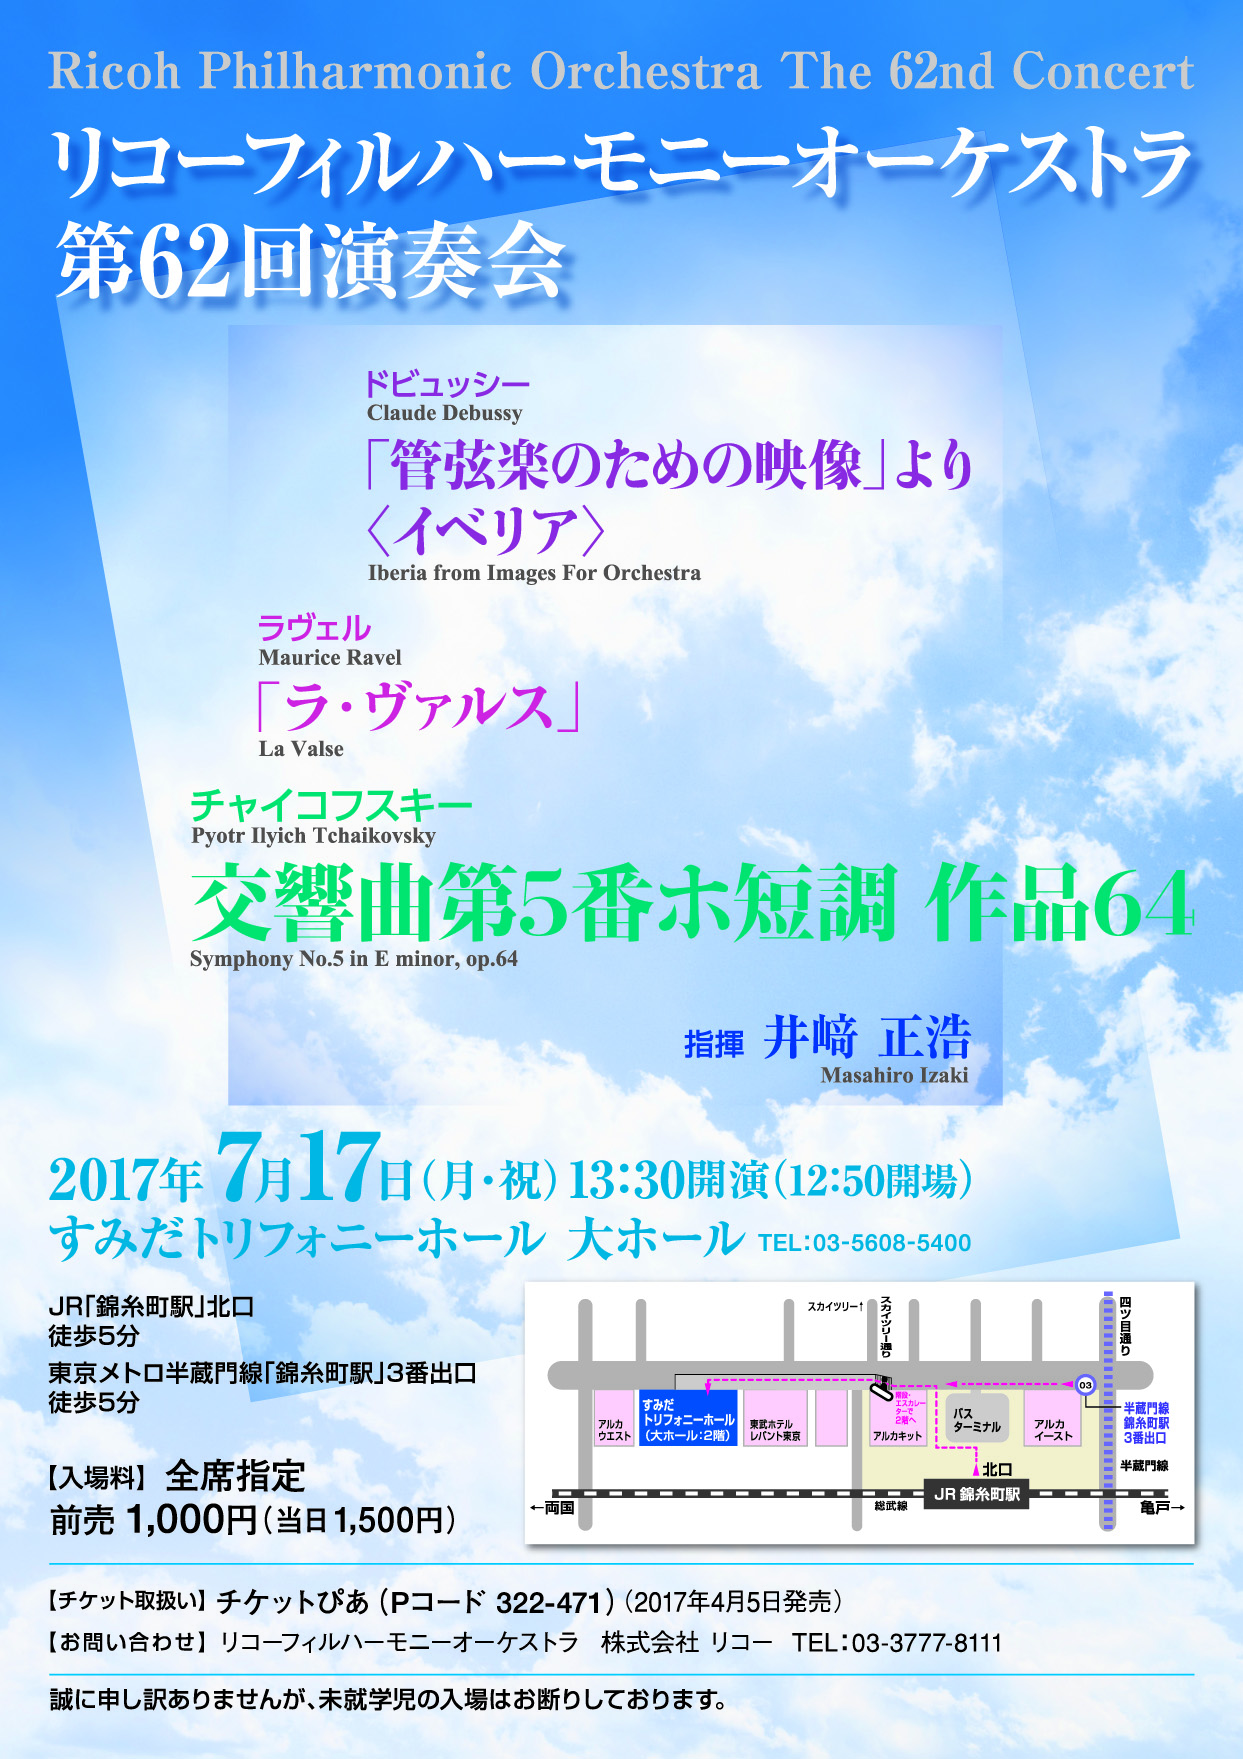 http://blog.ricoh.co.jp/RPhil/62nd-RPO-flyer1.jpg